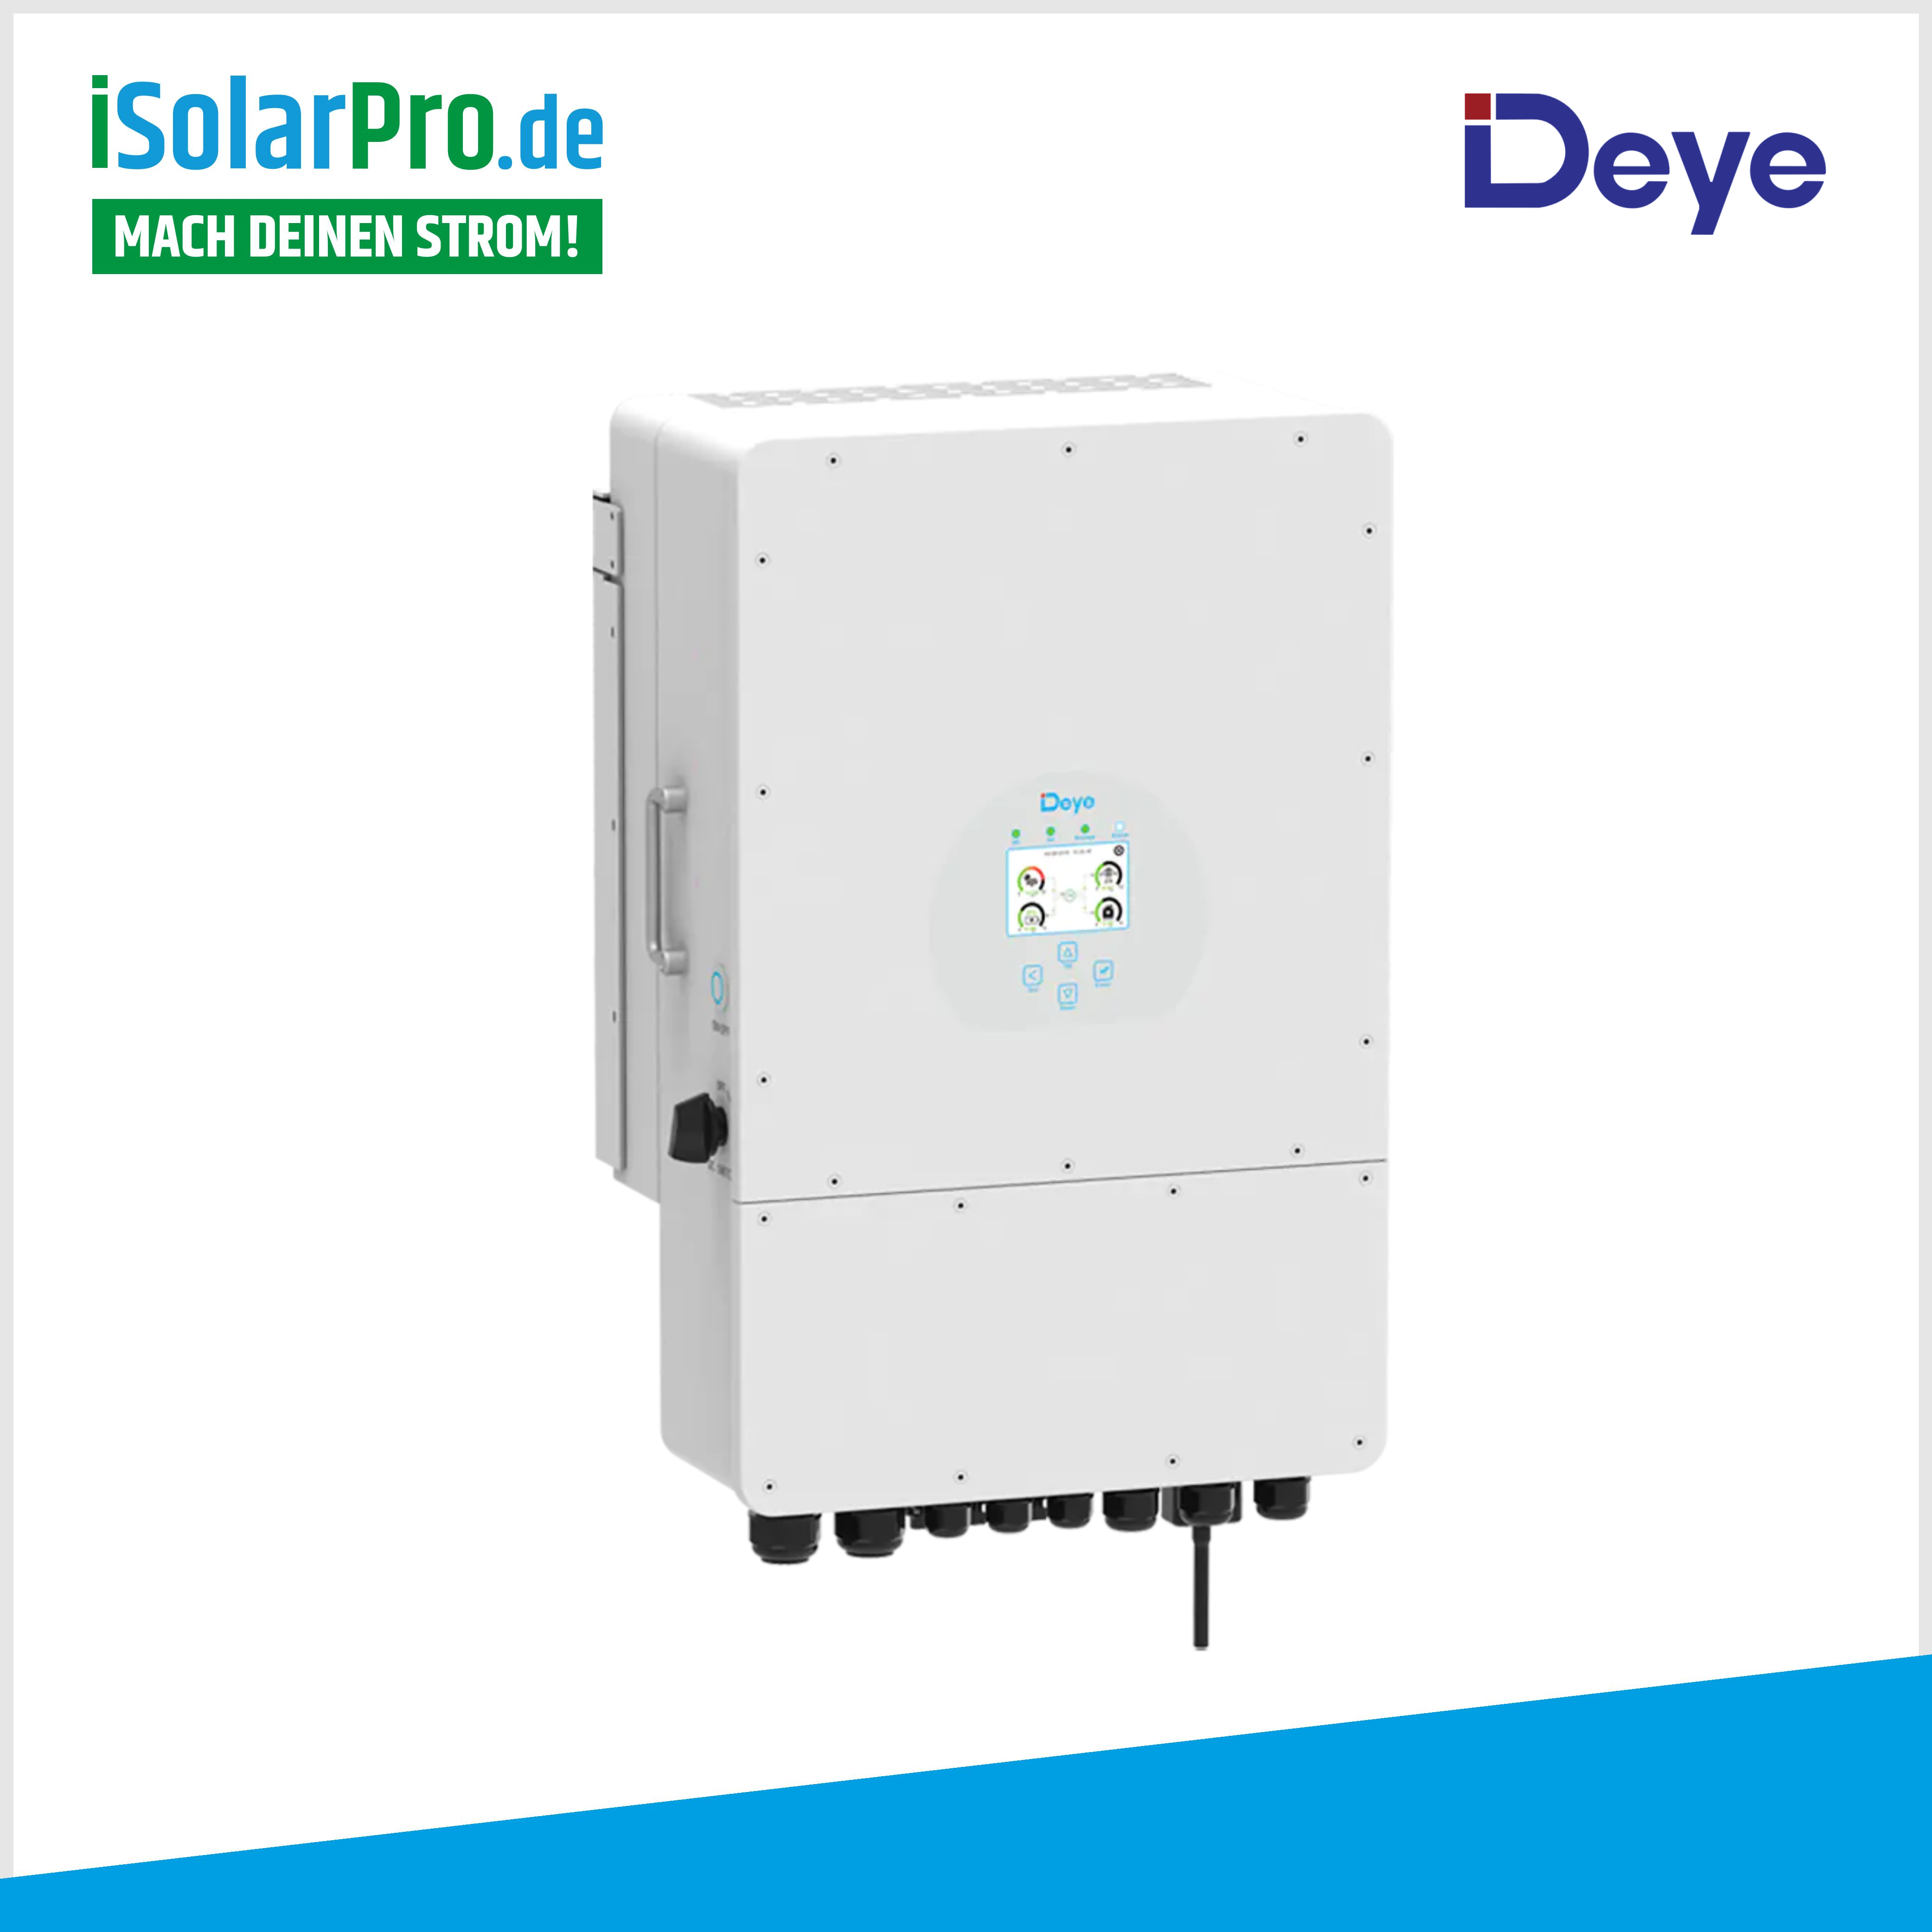 8kW PV-Anlage Set 19x 415W HYUNDAI Solarmodule + 8kW Deye Wechselrichter +6,14 kWh PV-Speicher Deye + Wallbox zappi